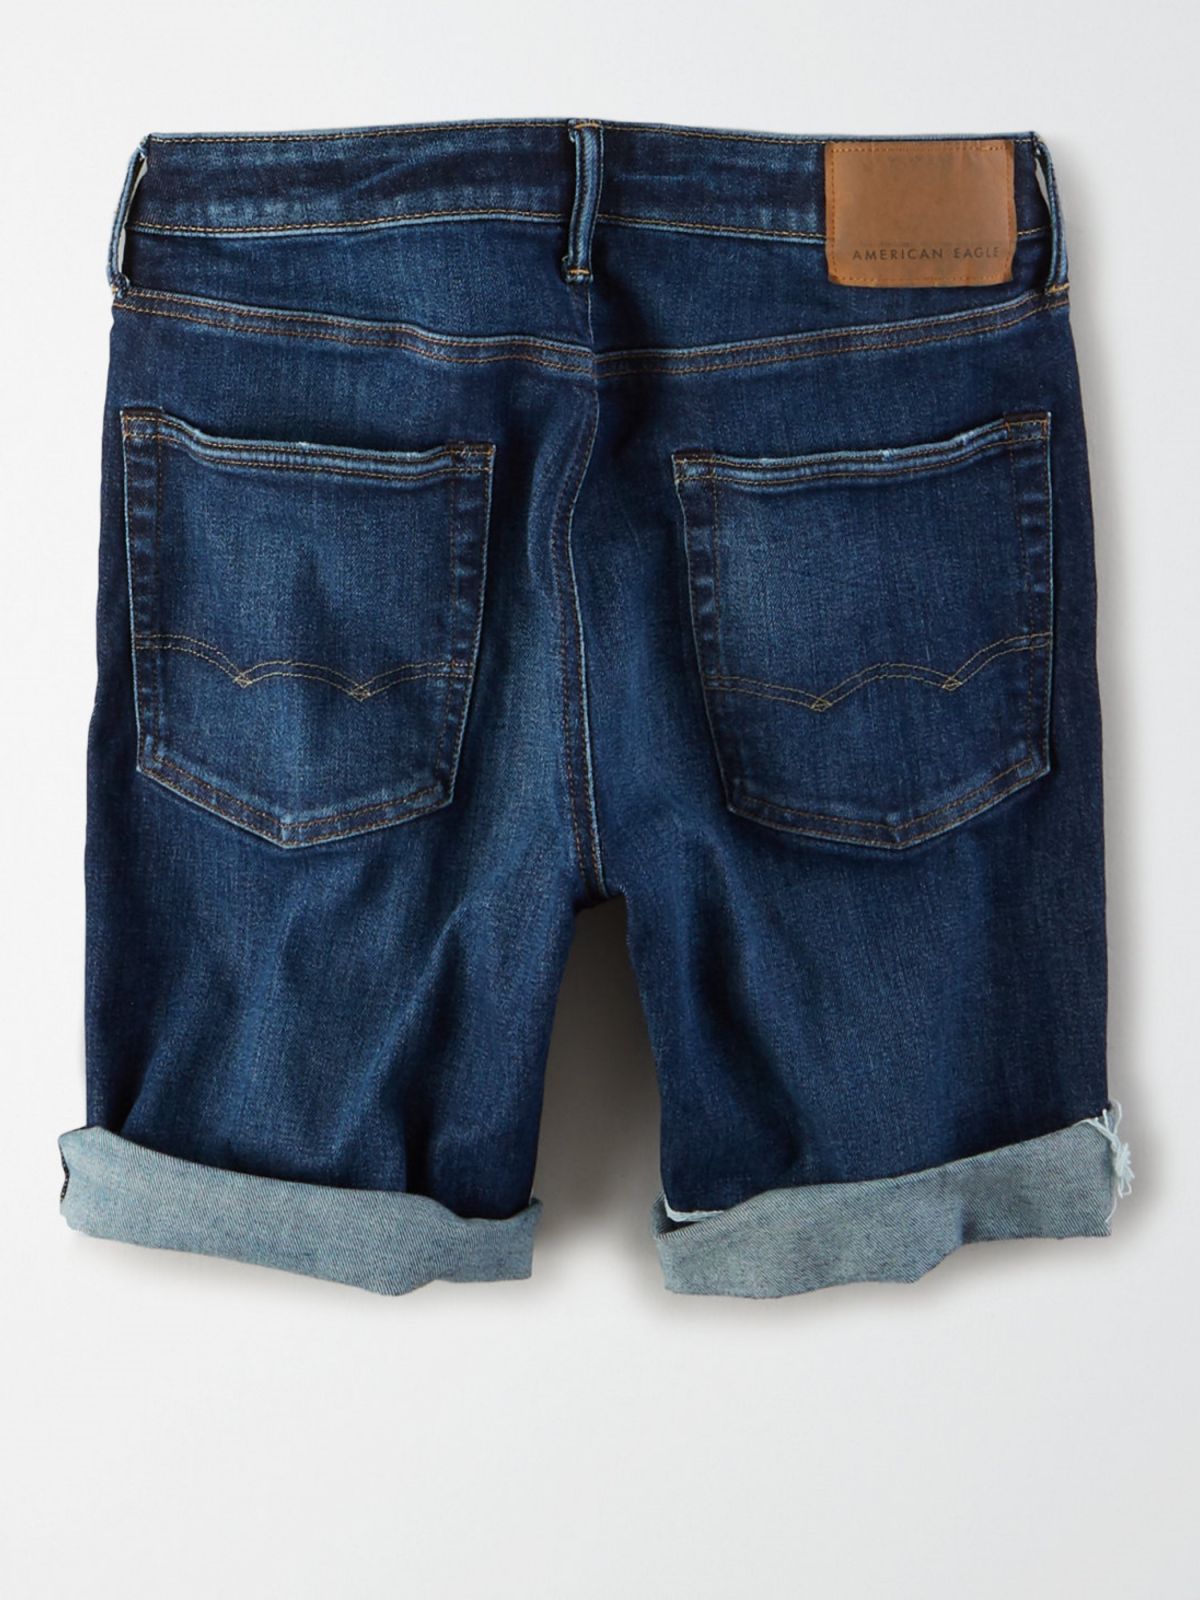  ג'ינס ברמודה בשטיפה כהה עם קרעים של AMERICAN EAGLE